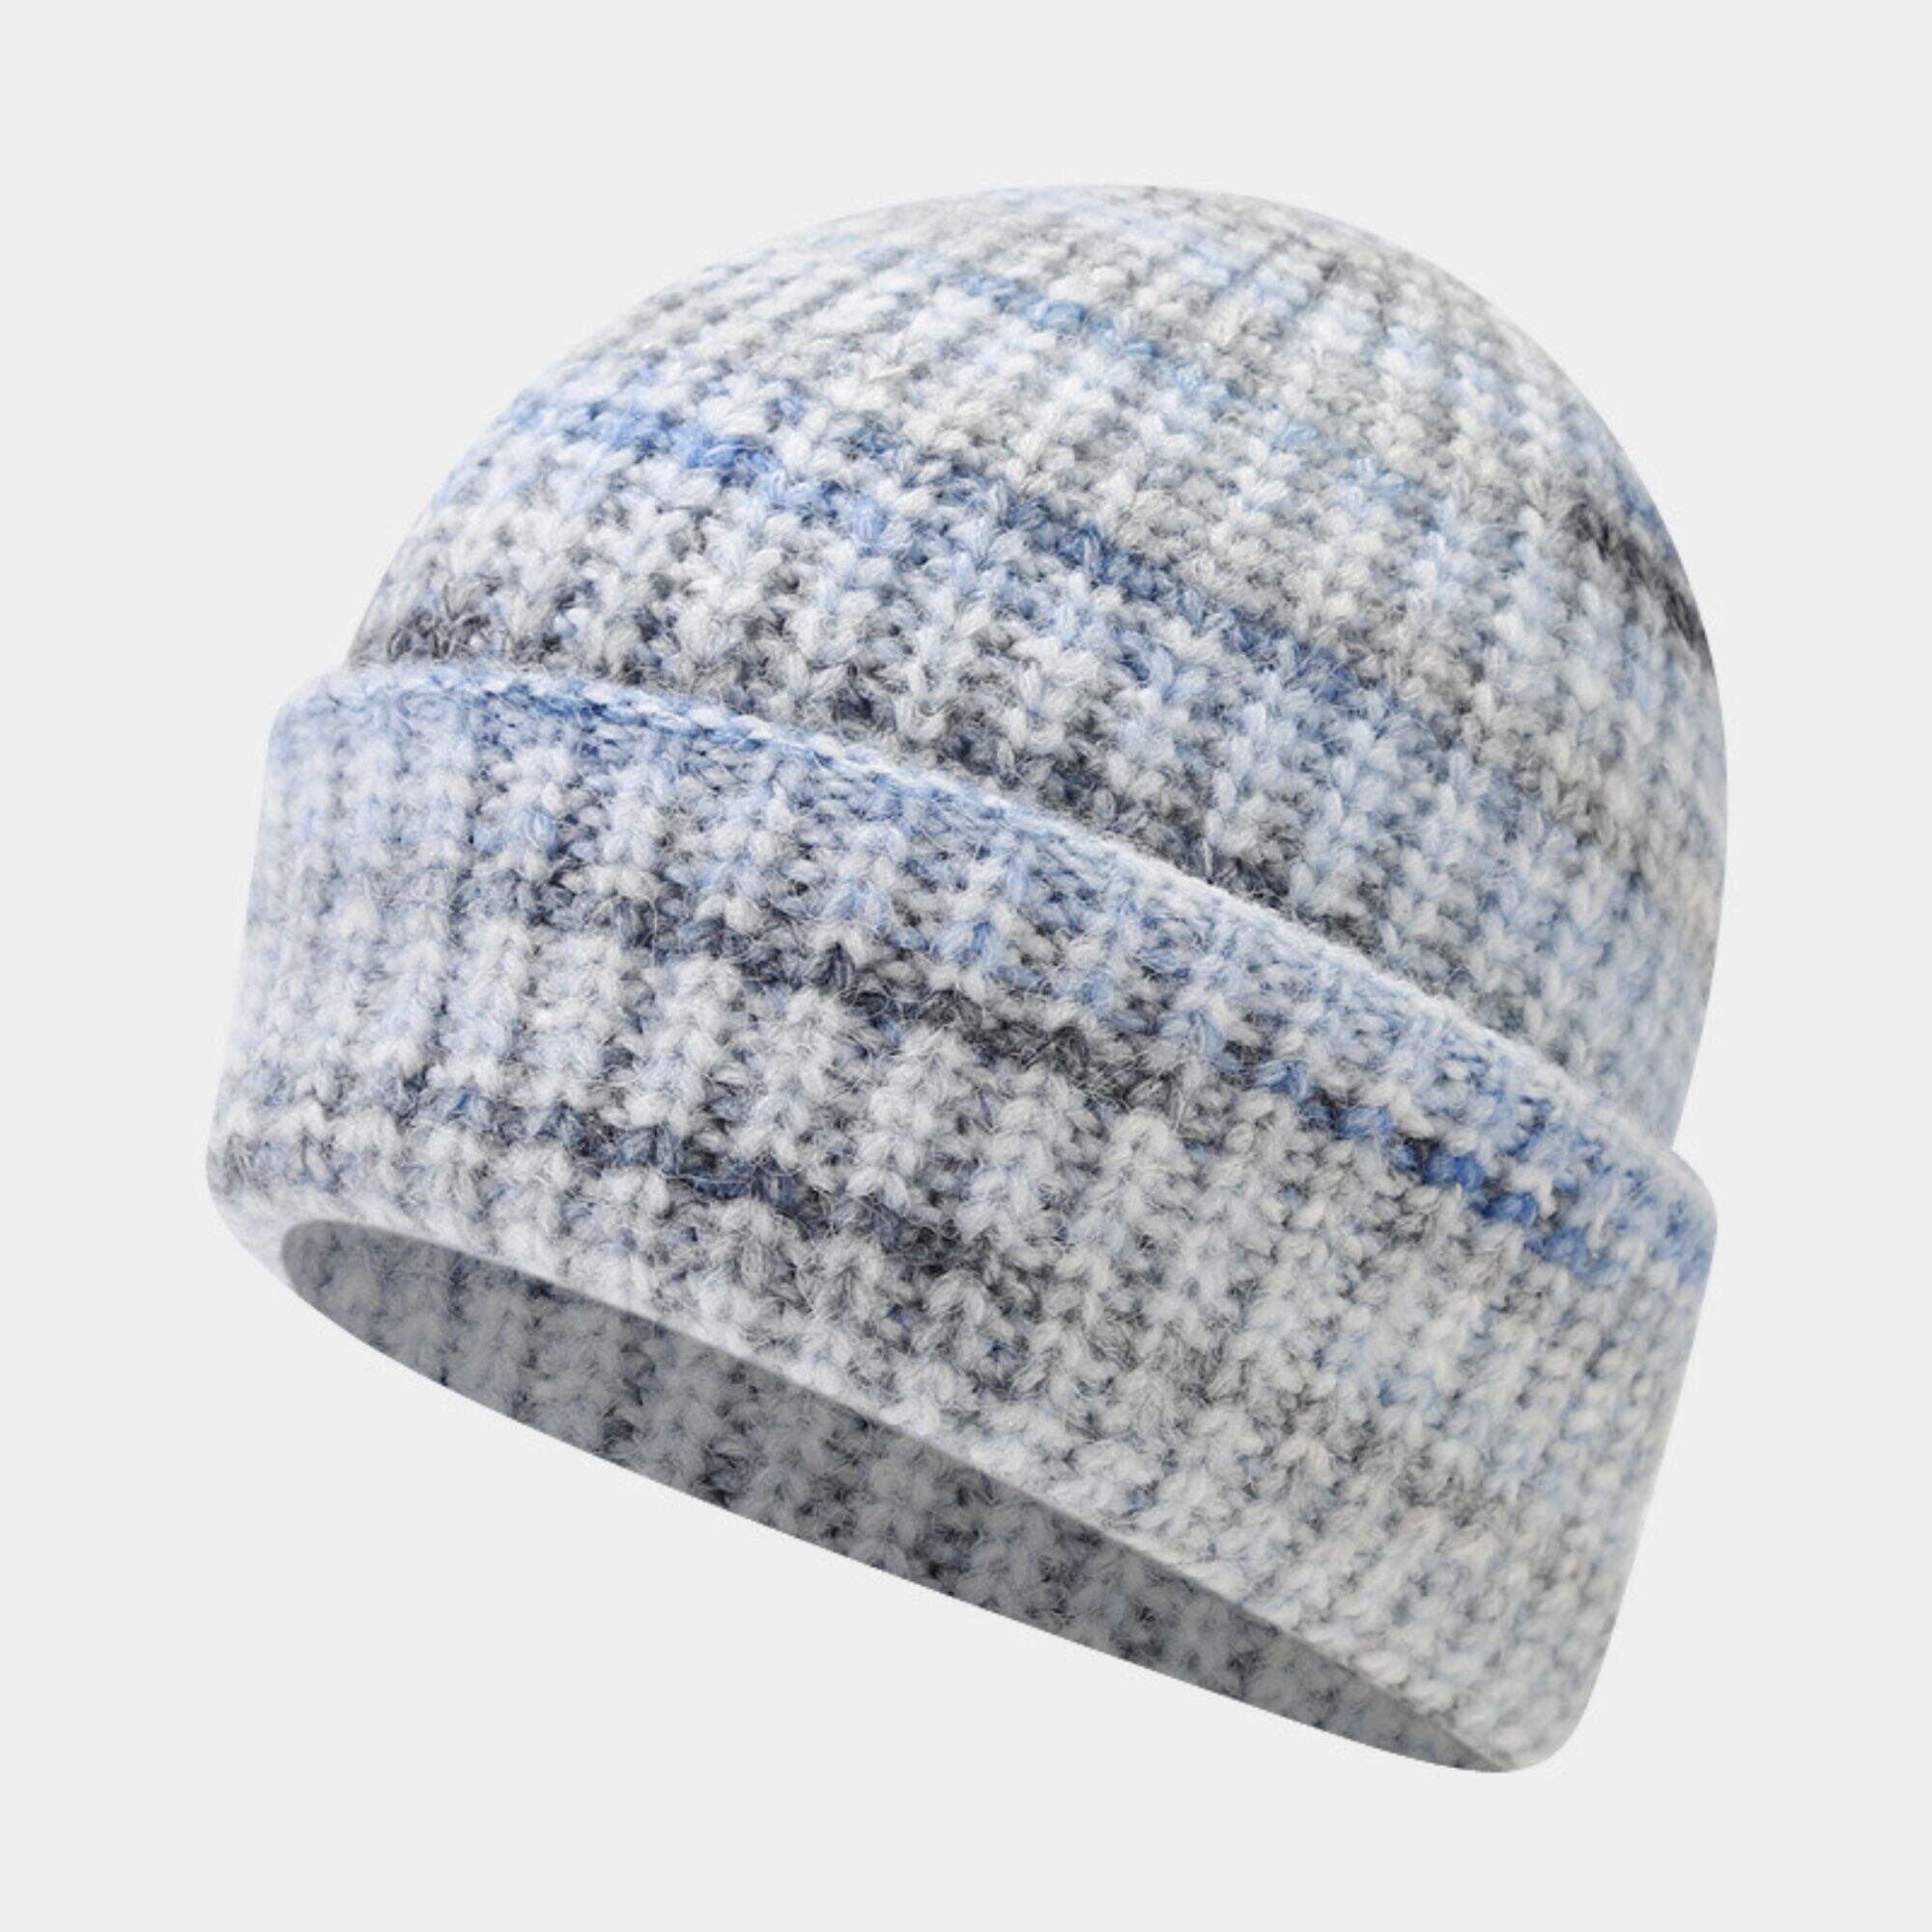 Knit winter colour mixture hat